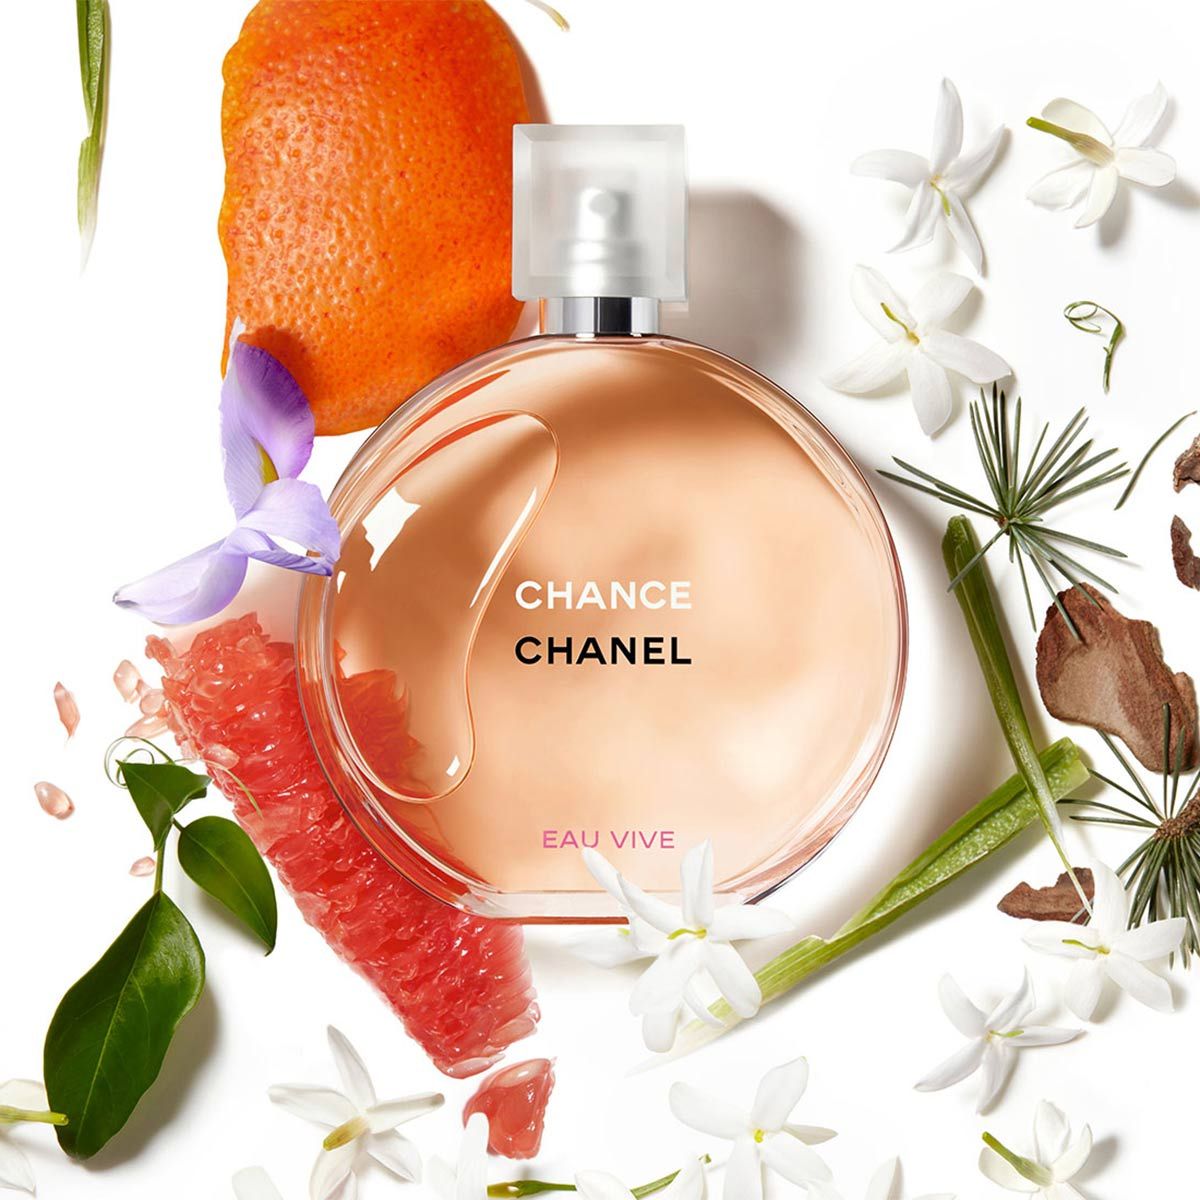 Review Nước Hoa Chanel Eau Vive Eau De Toilette 50ml  Chanel Chance